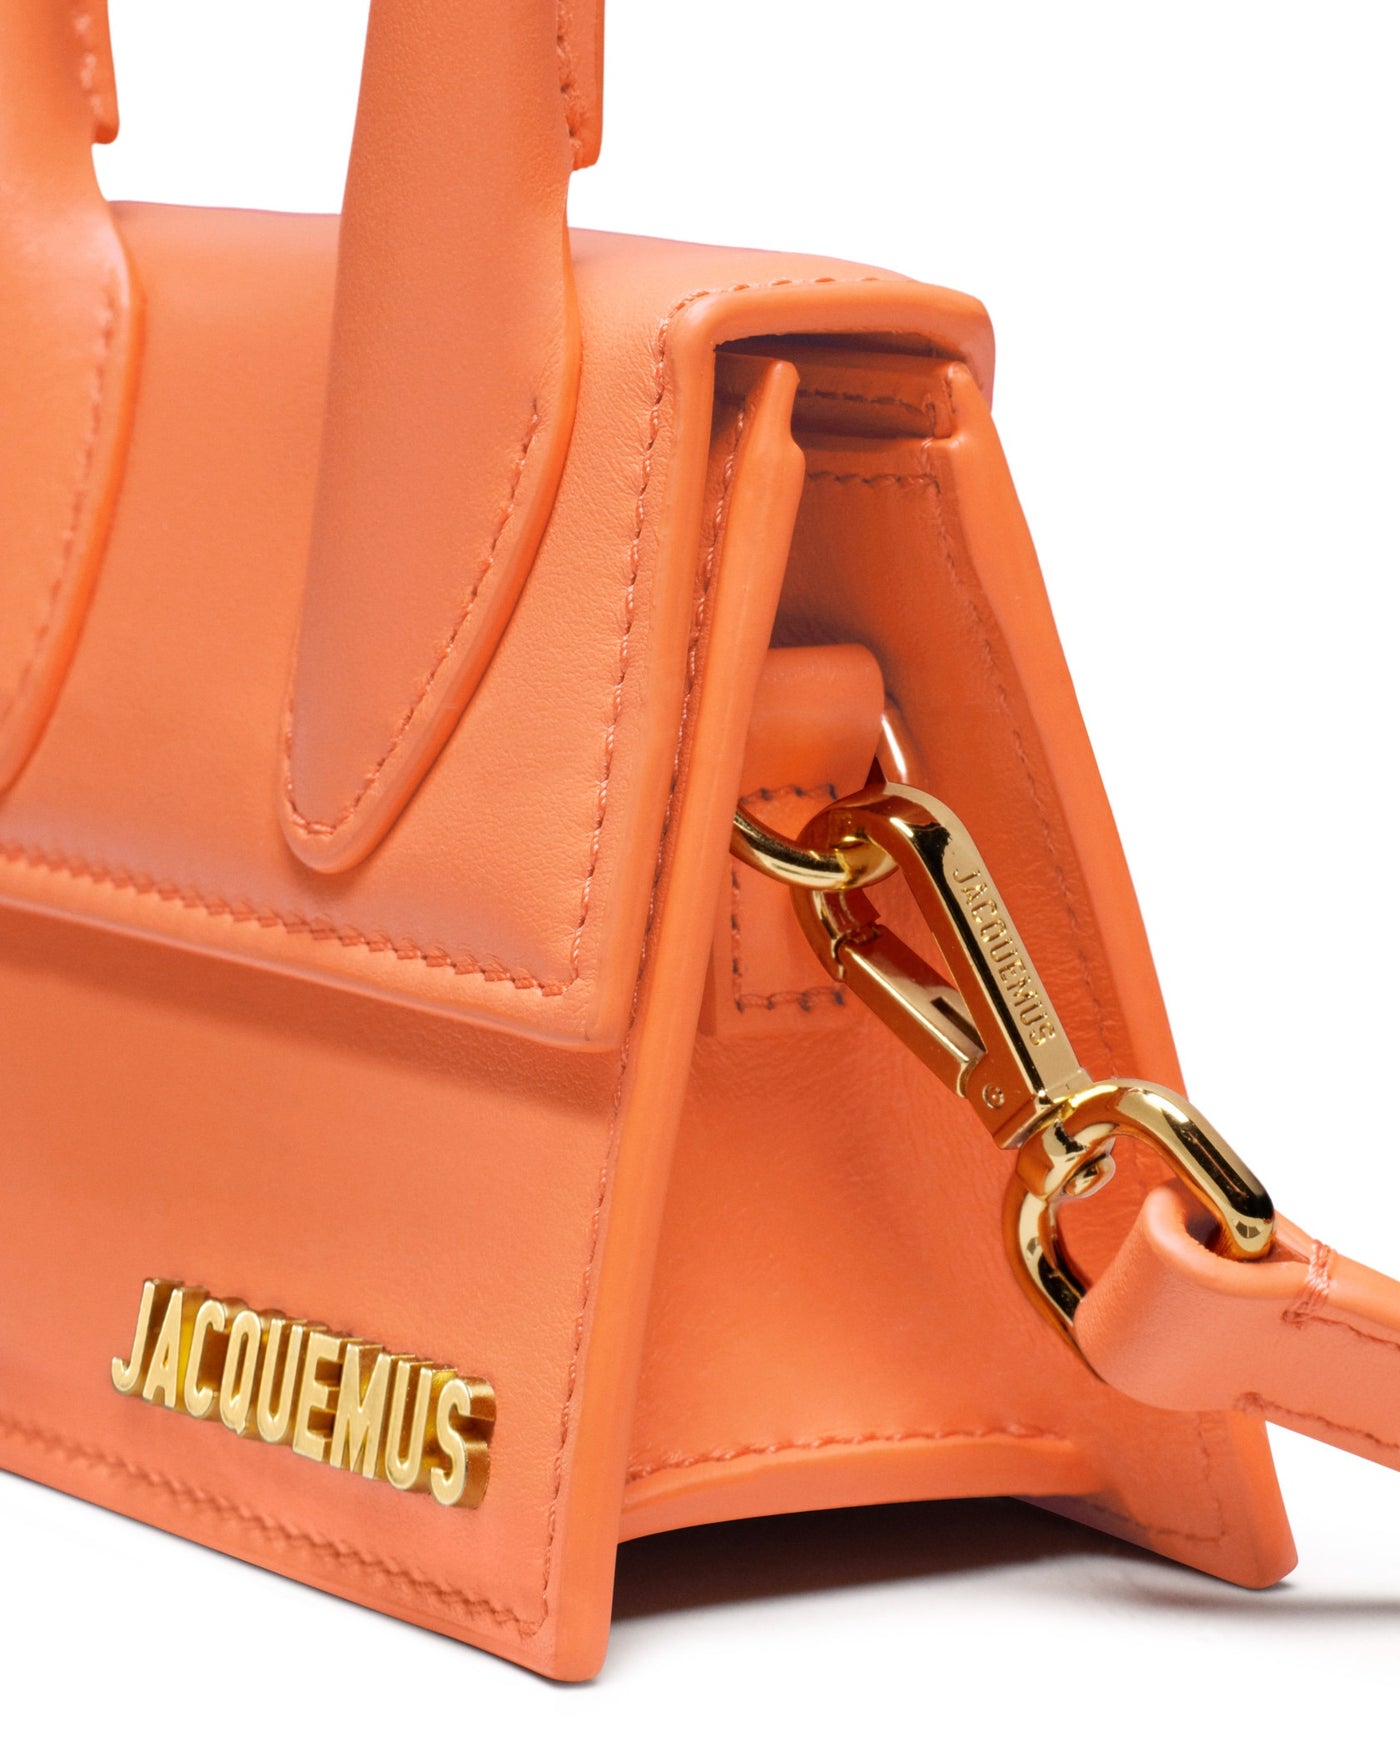 Jacquemus-LeChiquito-Orange-3